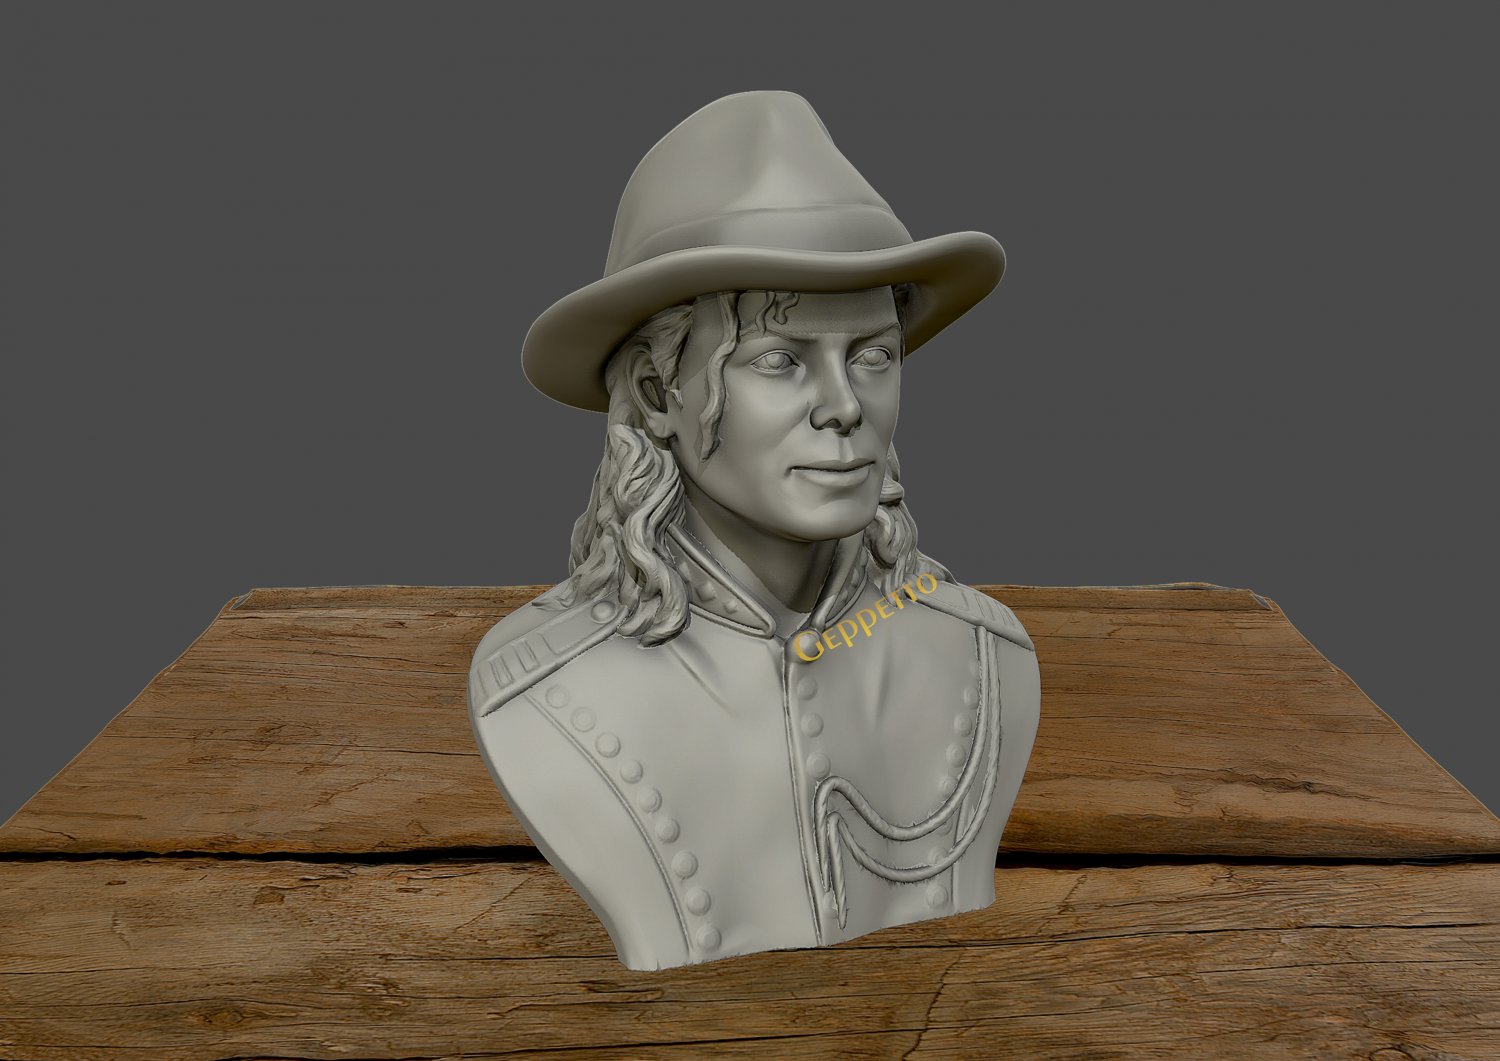 Michael Jackson Hat 3D model